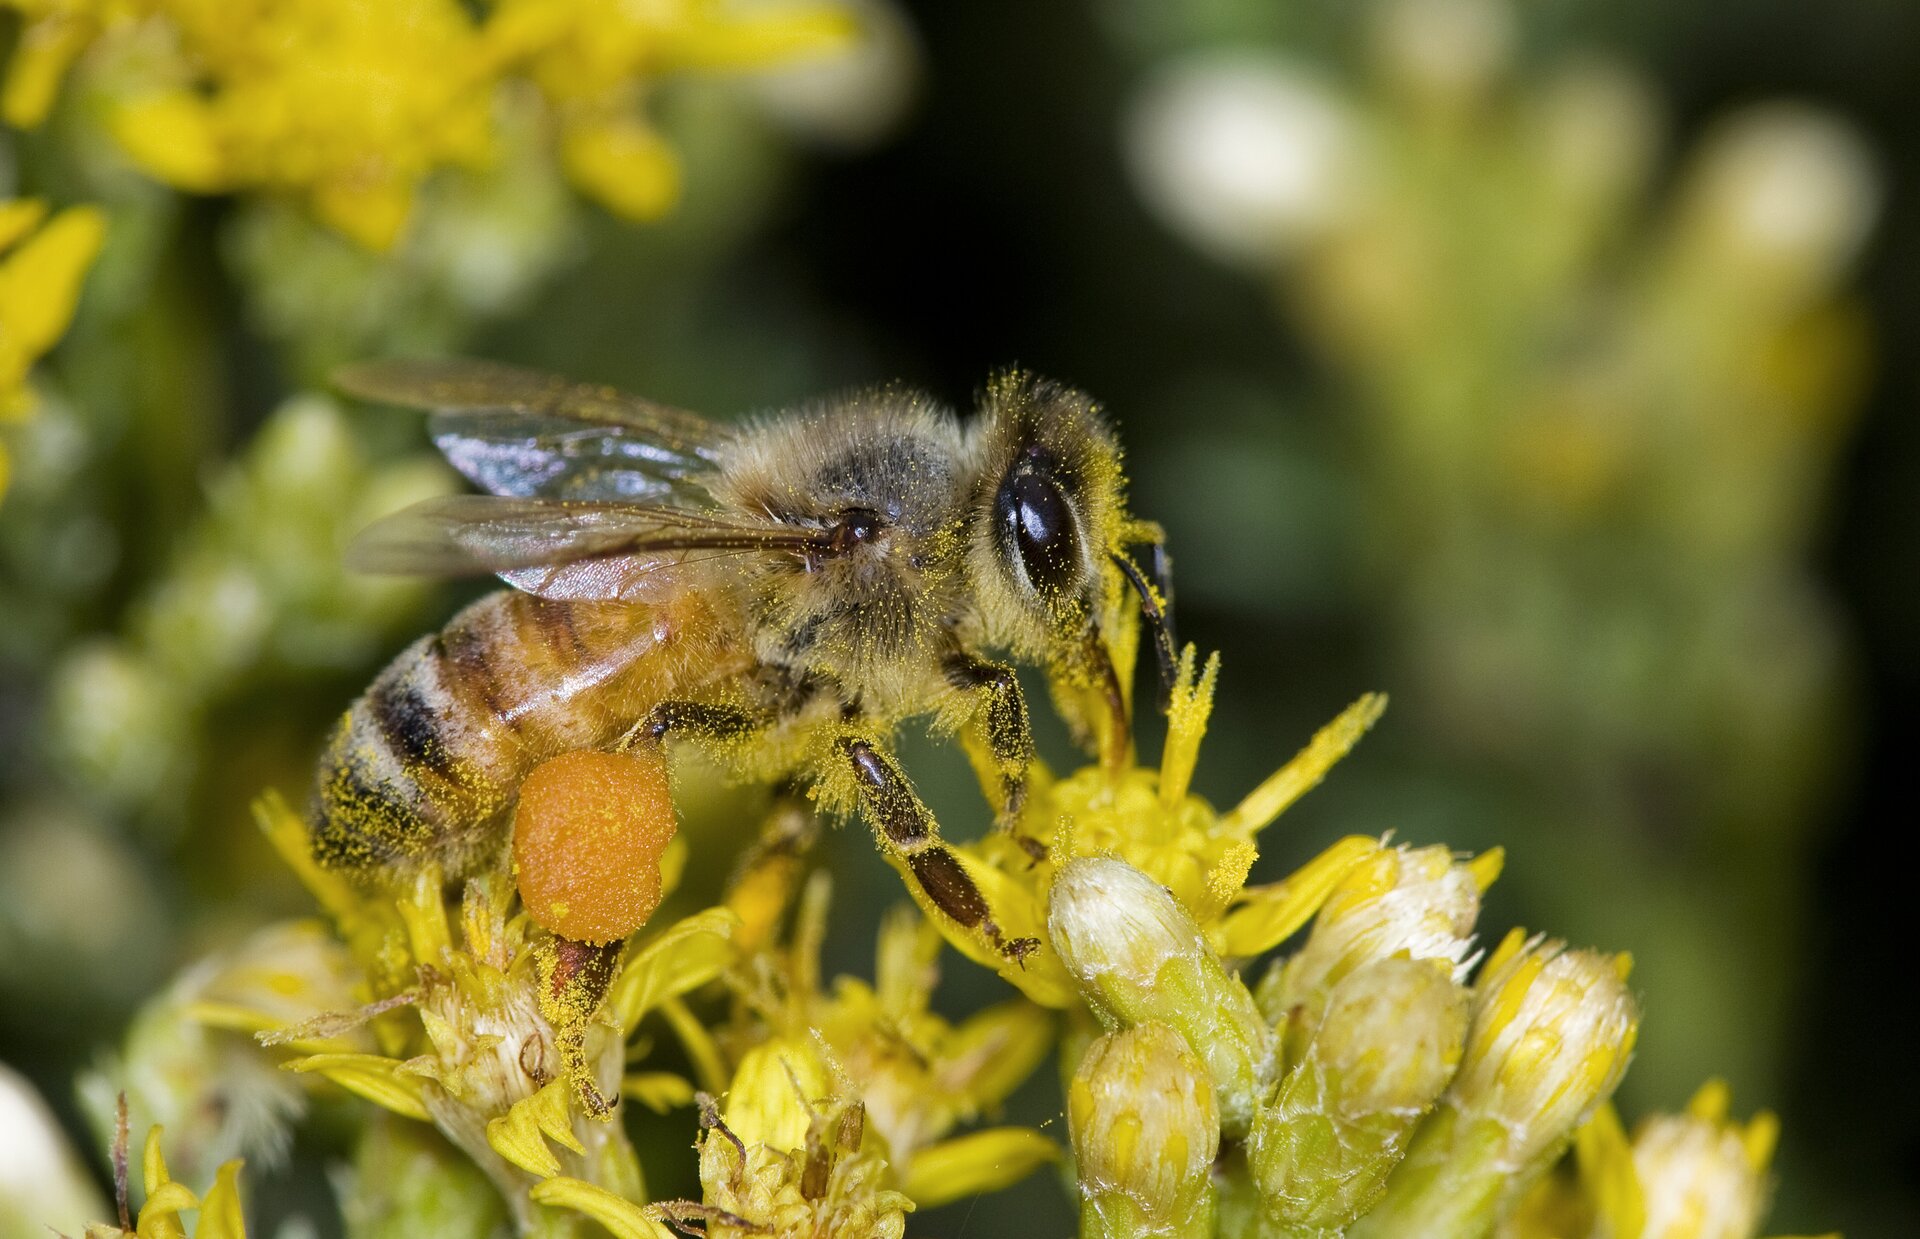 Zdjęcie przedstawia pszczołę na kwiatostanach. Pszczoła opiera się na koszyczkach drobnych żółtych kwiatów. Głowa pszczoły po prawej stronie zdjęcia. Odwłok w czarnożółte pionowe paski po lewej. Na tylnych odnóżach zgromadzony pyłek w kształcie kuli. Cały odwłok pszczoły, przód głowy oraz odnóża pokryte są żółtym drobnym pyłkiem.